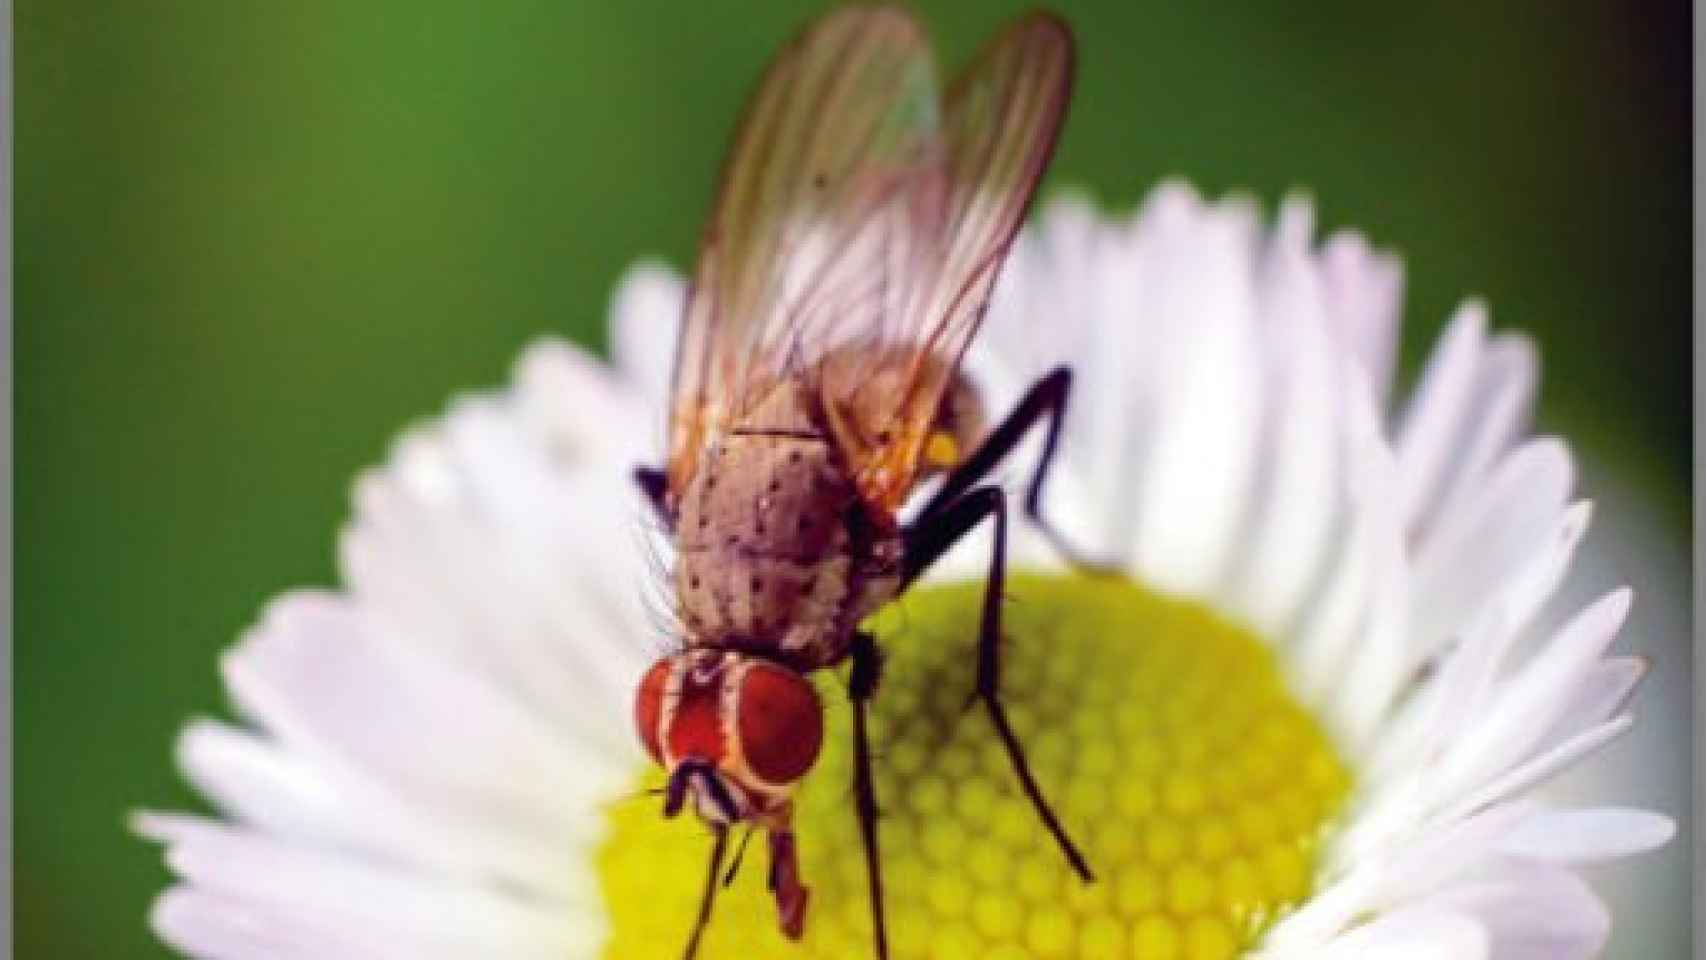 Image: Confesiones de una mosca